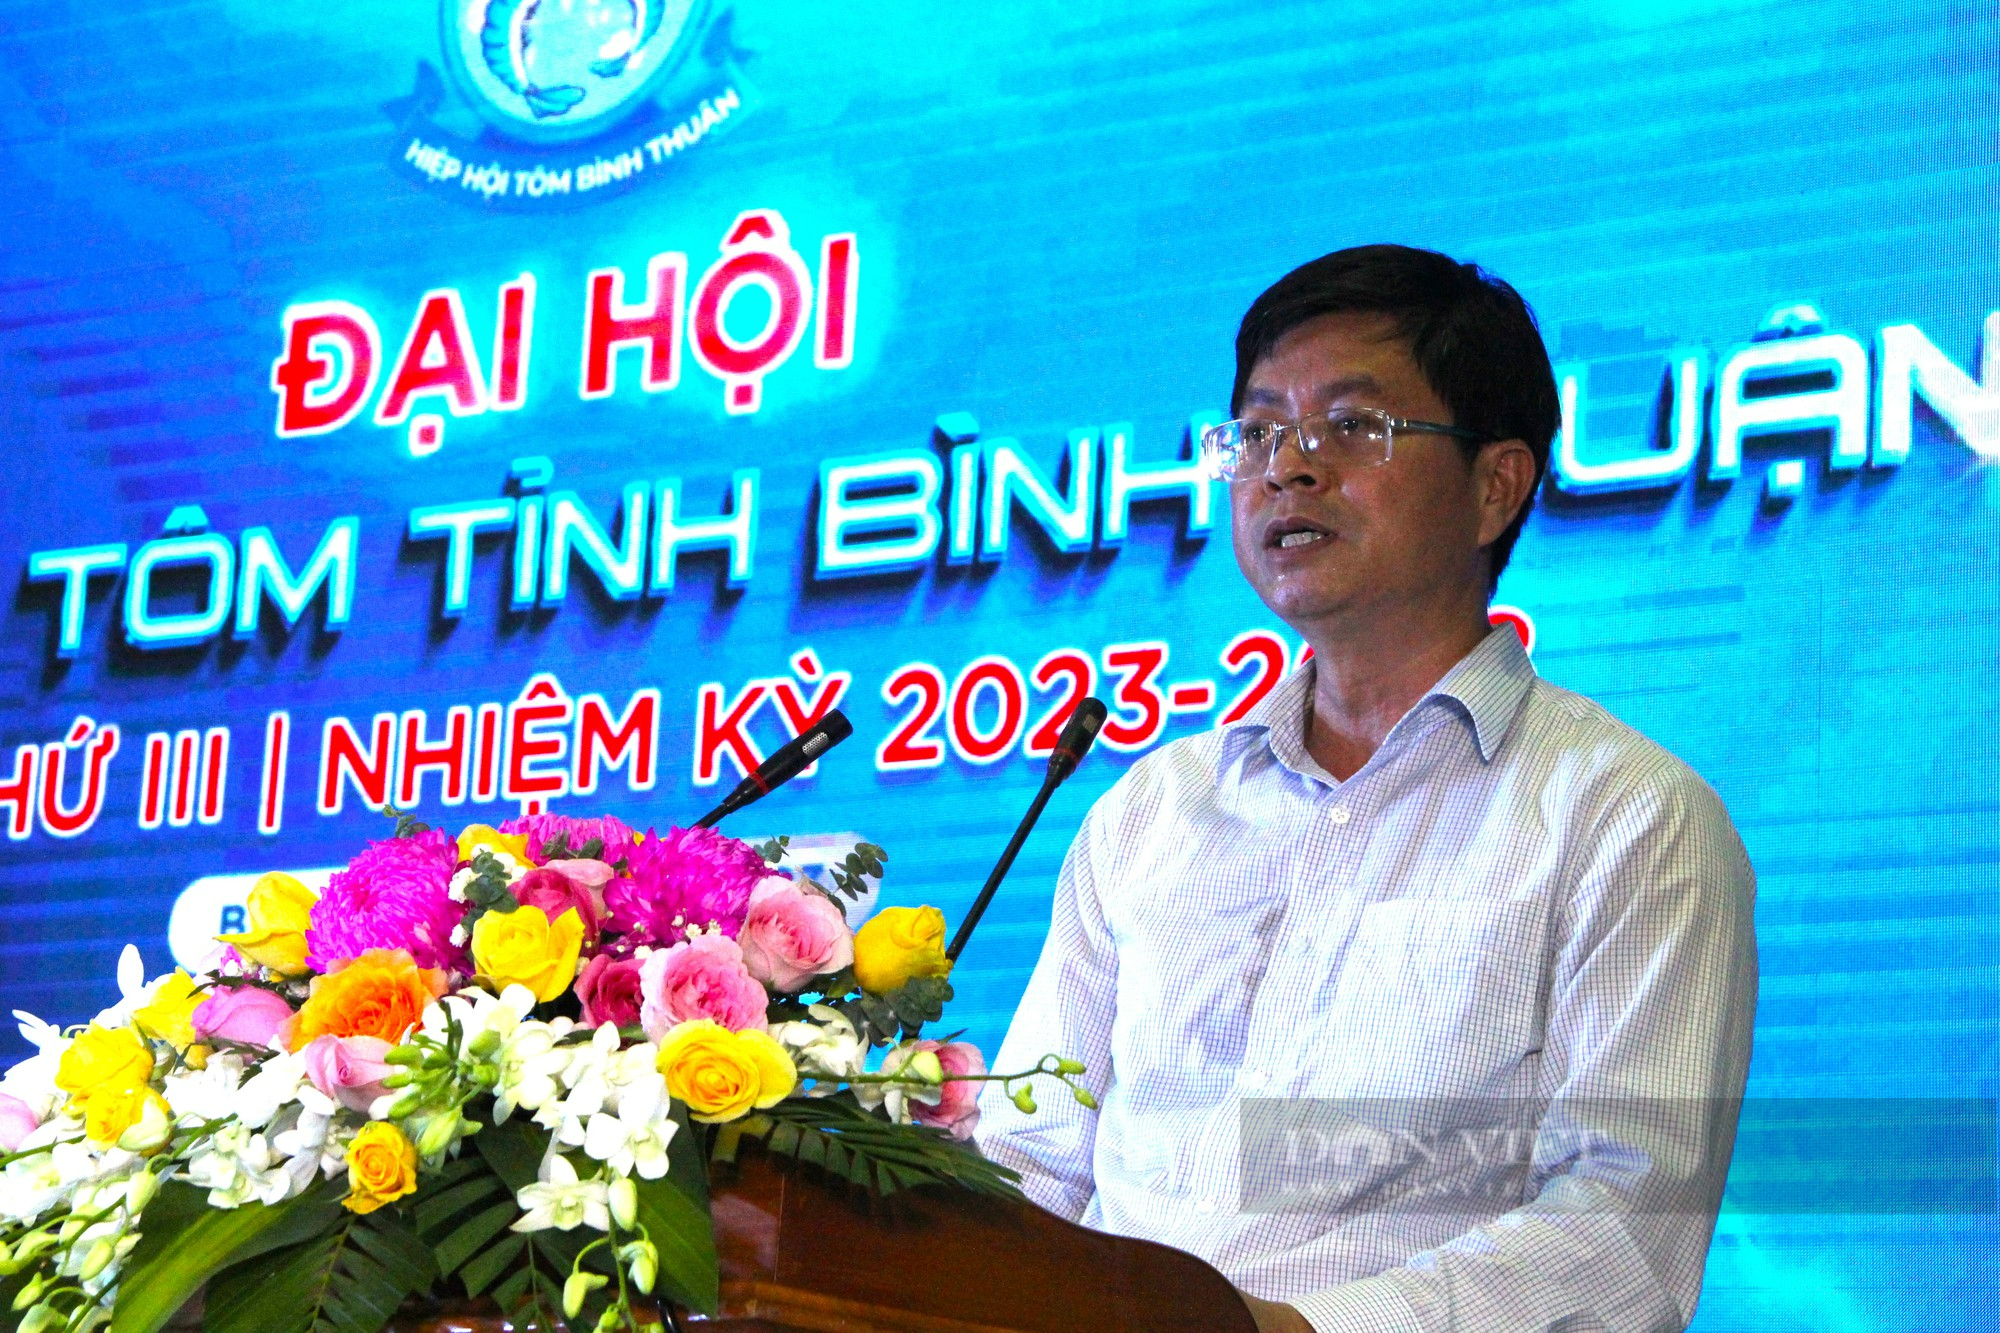 Tôm giống Bình Thuận khẳng định chất lượng, cung cấp 20% thị trường tôm giống cả nước - Ảnh 4.